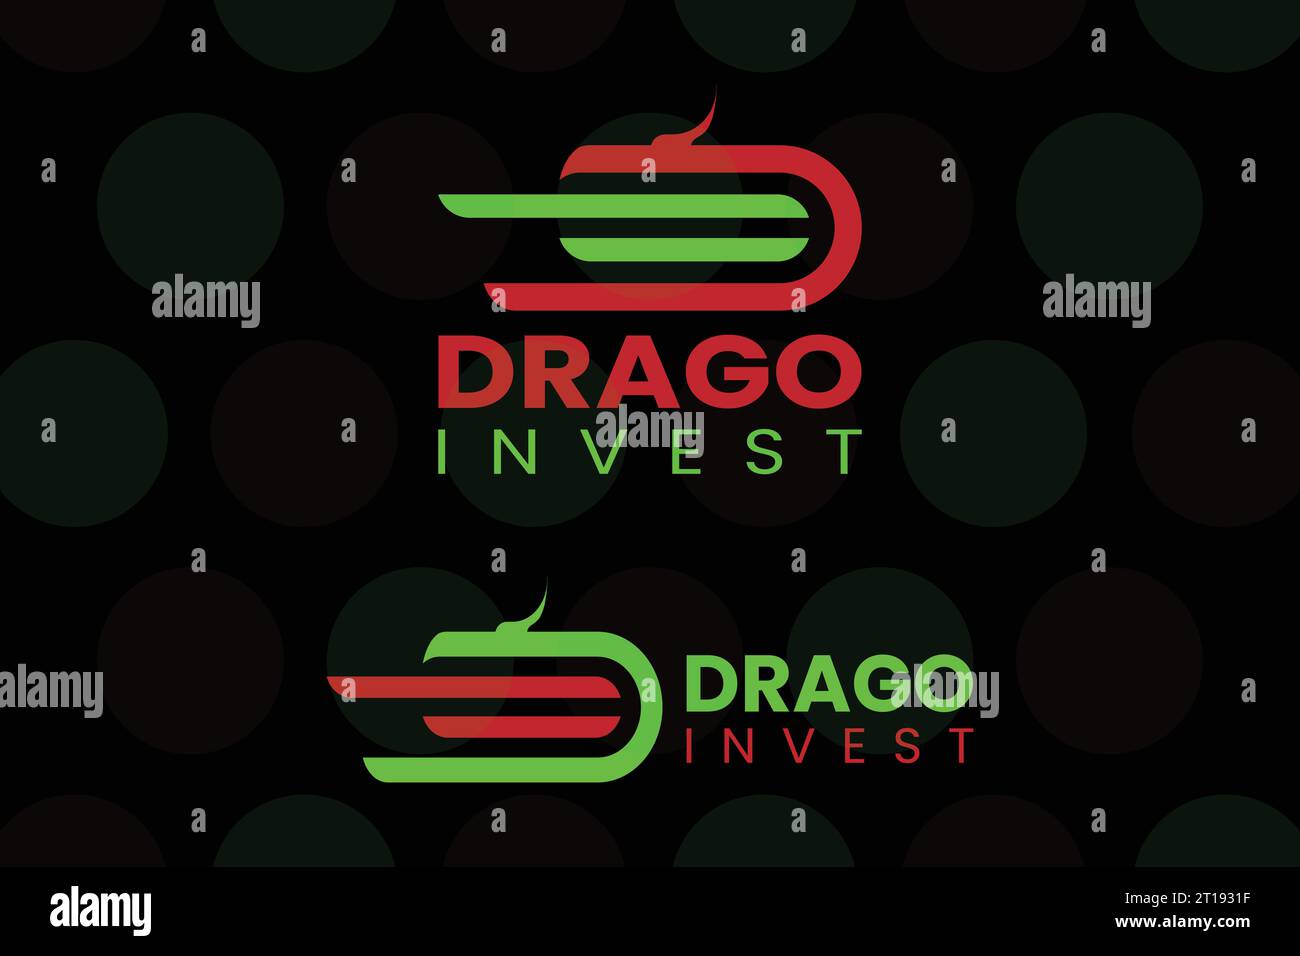 Design des Drago Invest Business Logos. Diagramm der erniedrigten Pfund-Rate. Flache Ausführung. Grün und Rot mit ovaler Form. Drago Invest Logo. Stock Vektor